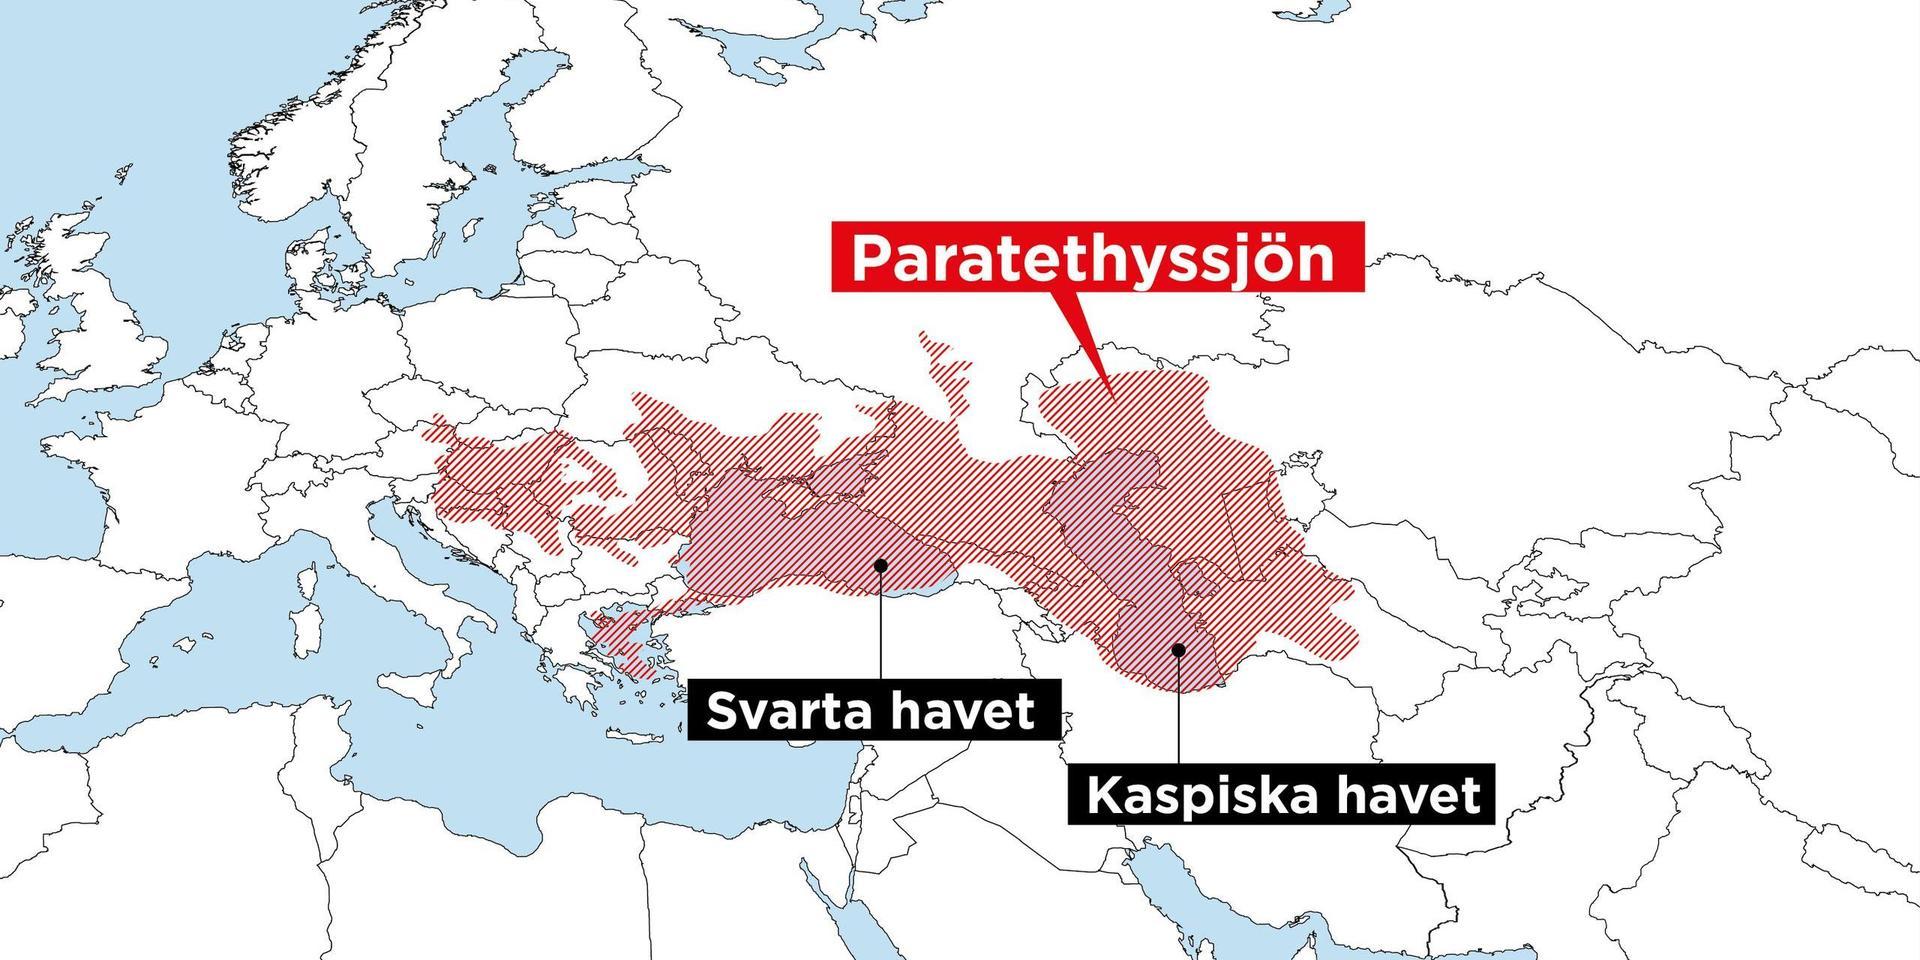 Paratethyssjön sträckte sig från Alperna bort mot Kazakstan. Vattnet var bräckt, ungefär som i Östersjön. När sjön krympte ökade salthalten. De enda större vattenmassor av sjön som fortfarande finns kvar är Svarta havet och Kaspiska havet.